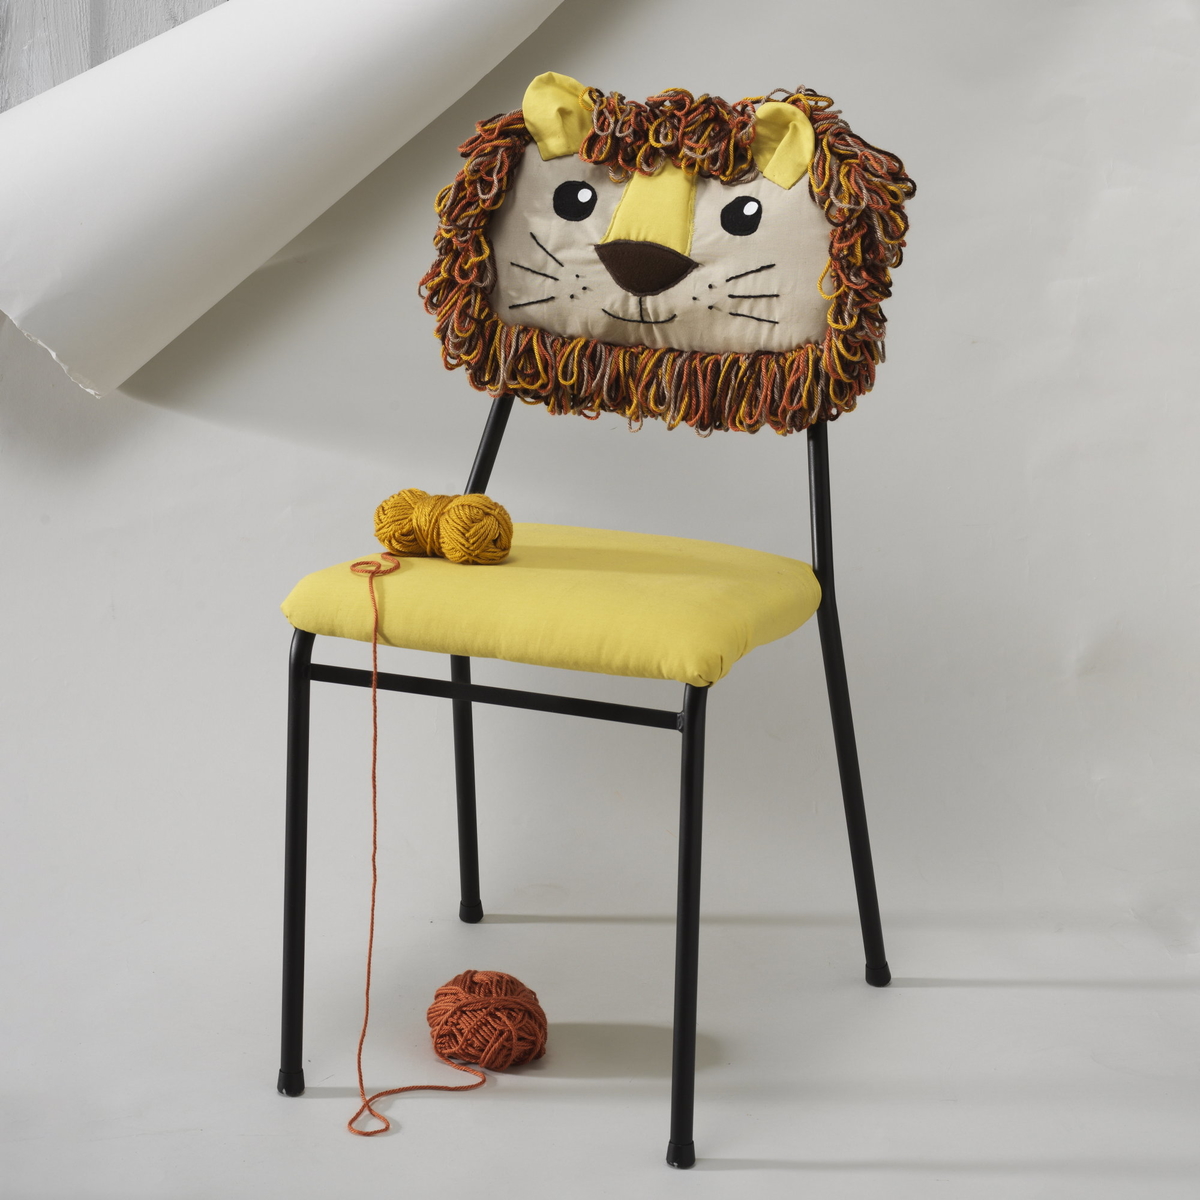 Make a playful lion chair